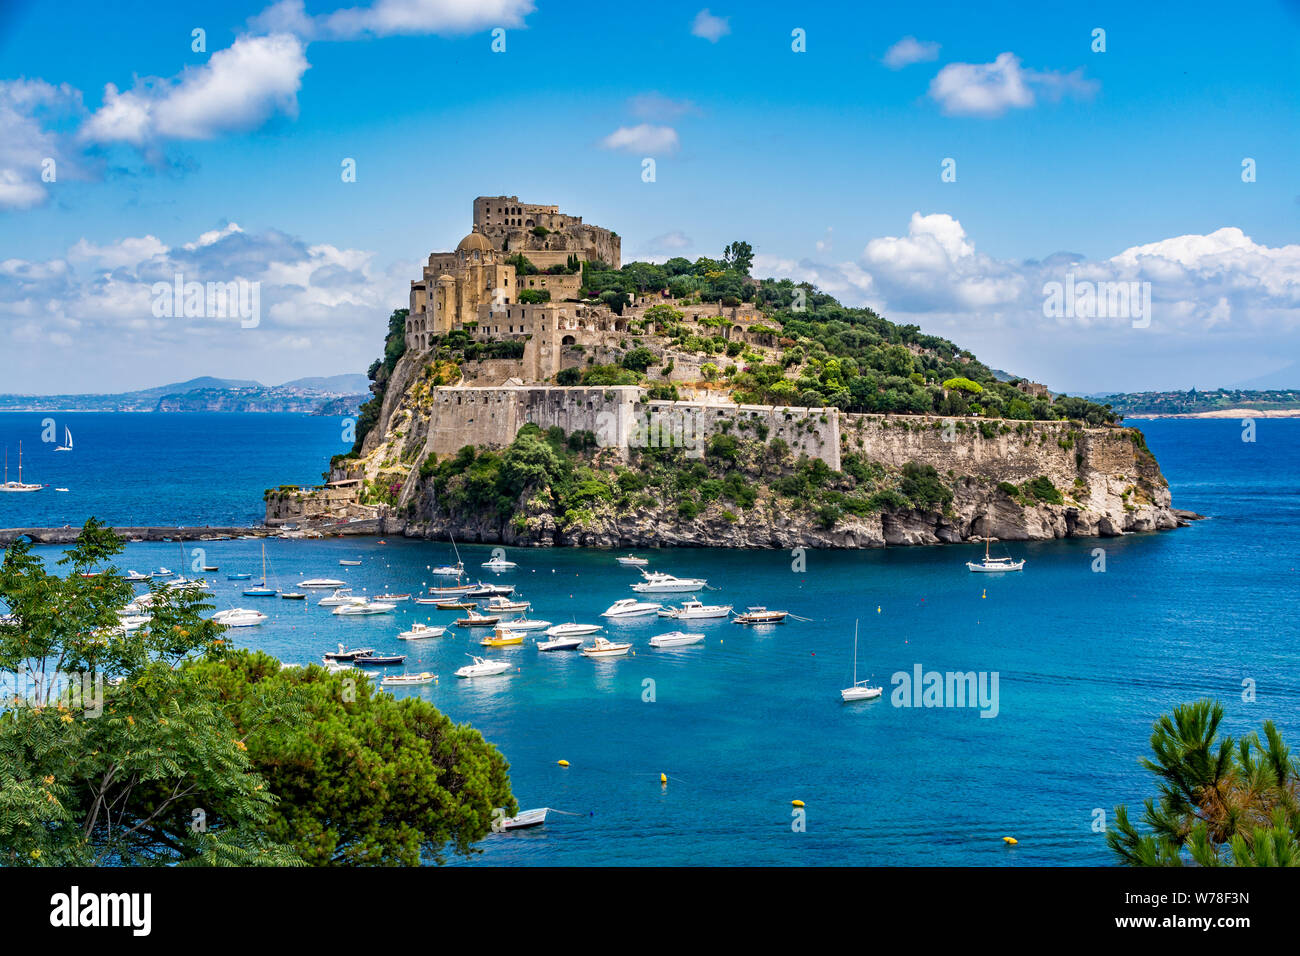 Aragonese Castle - Château Aragonais sur une belle journée d'été, l'île d'Ischia, Italie Banque D'Images